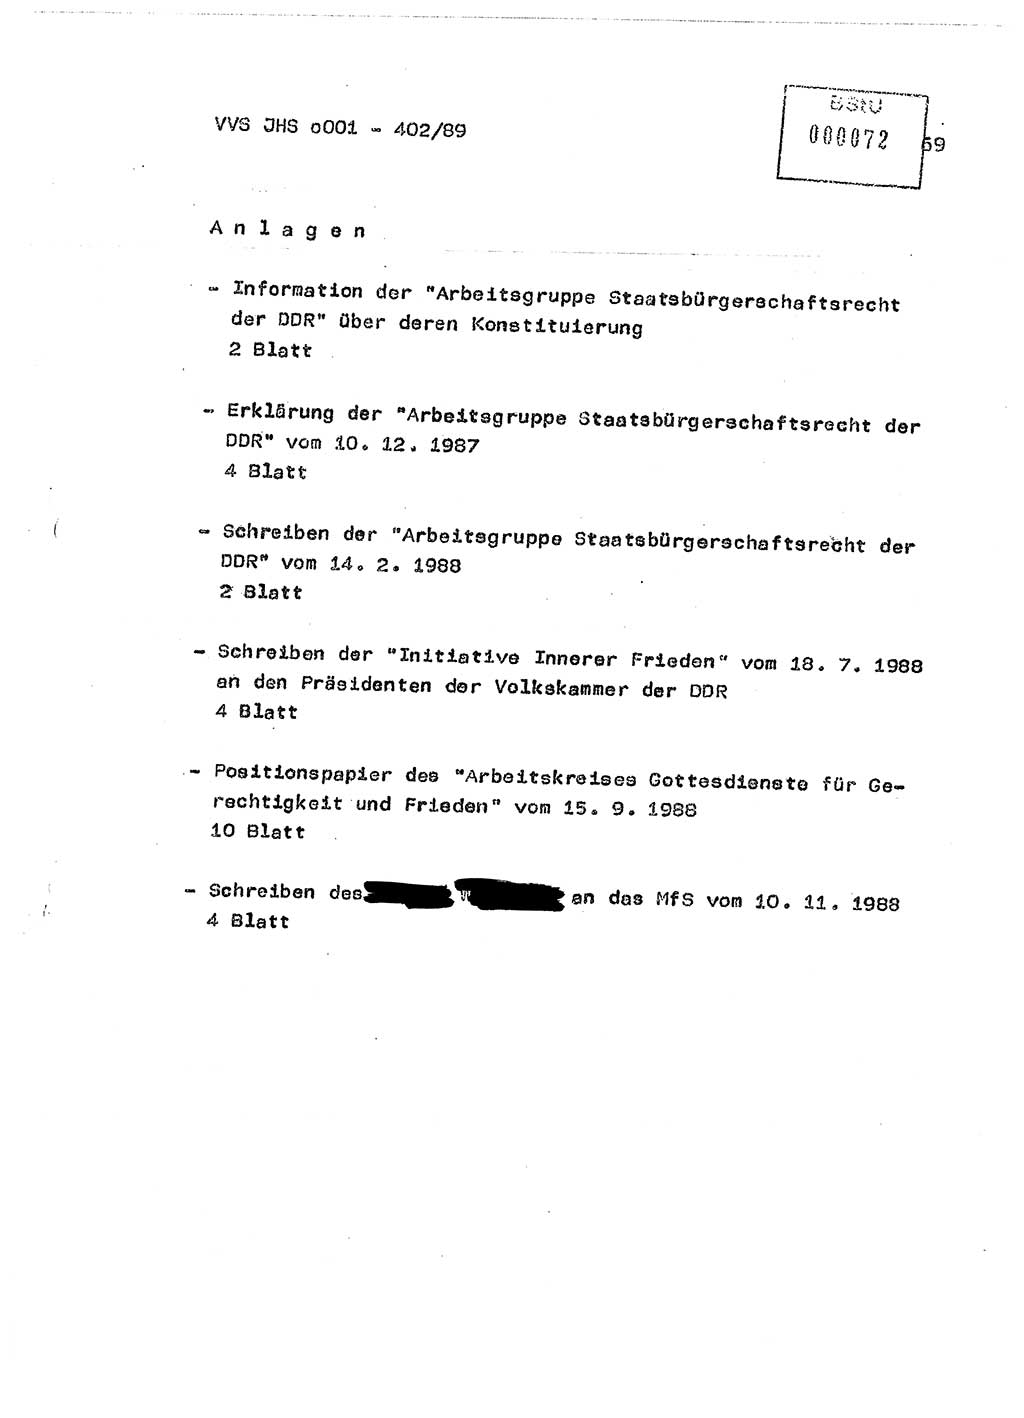 Diplomarbeit Major Günter Müller (HA Ⅸ/9), Ministerium für Staatssicherheit (MfS) [Deutsche Demokratische Republik (DDR)], Juristische Hochschule (JHS), Vertrauliche Verschlußsache (VVS) o001-402/89, Potsdam 1989, Seite 69 (Dipl.-Arb. MfS DDR JHS VVS o001-402/89 1989, S. 69)